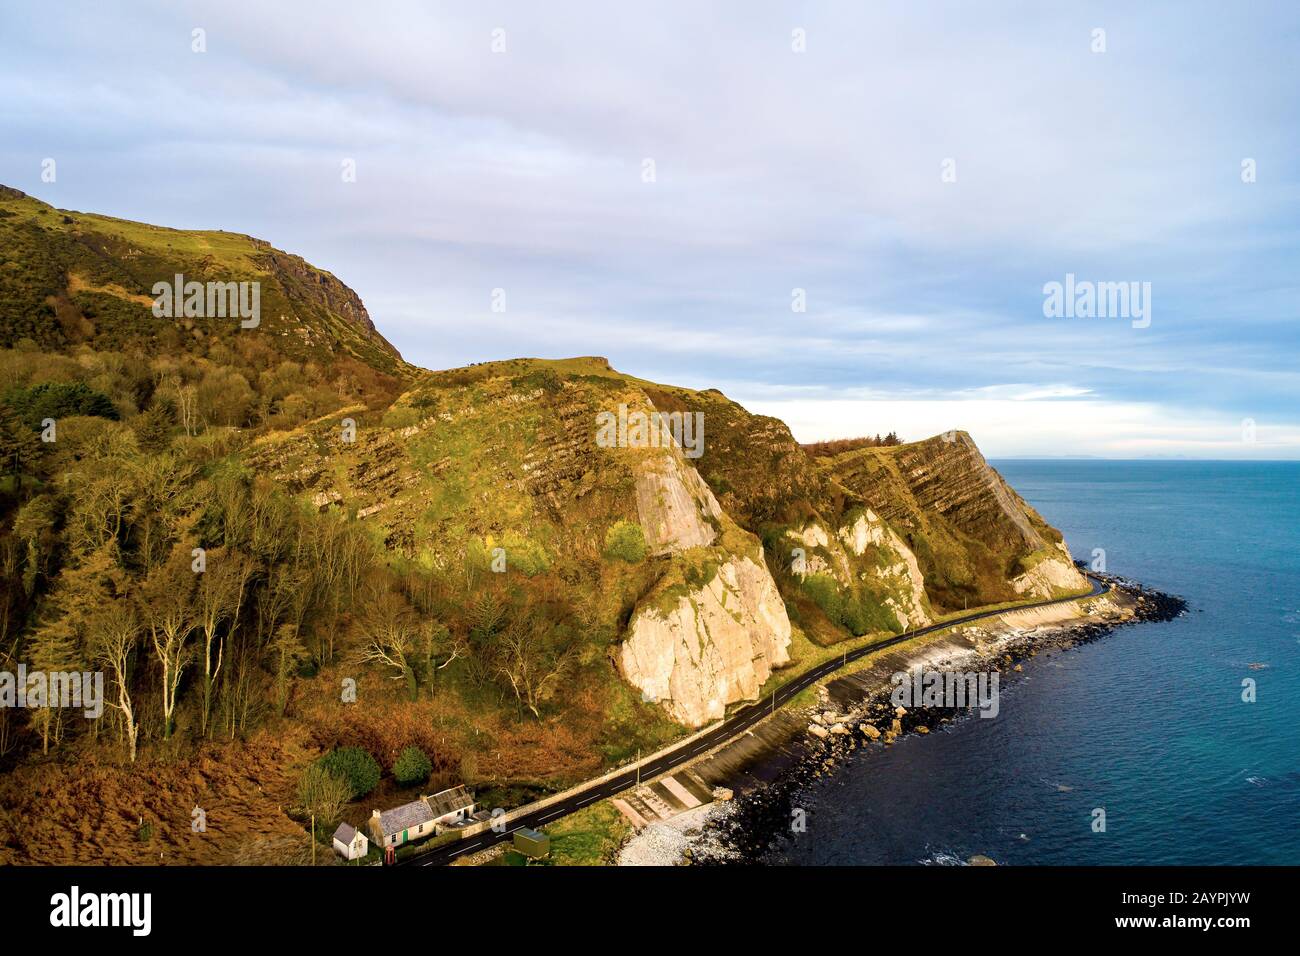 Nordirland, Großbritannien. Atlantikküste. Cliffs und Antrim Coast Road, auch bekannt als Causeway Coastal Route. Eine der landschaftlich schönsten Küstenstraßen Europas. Aer Stockfoto